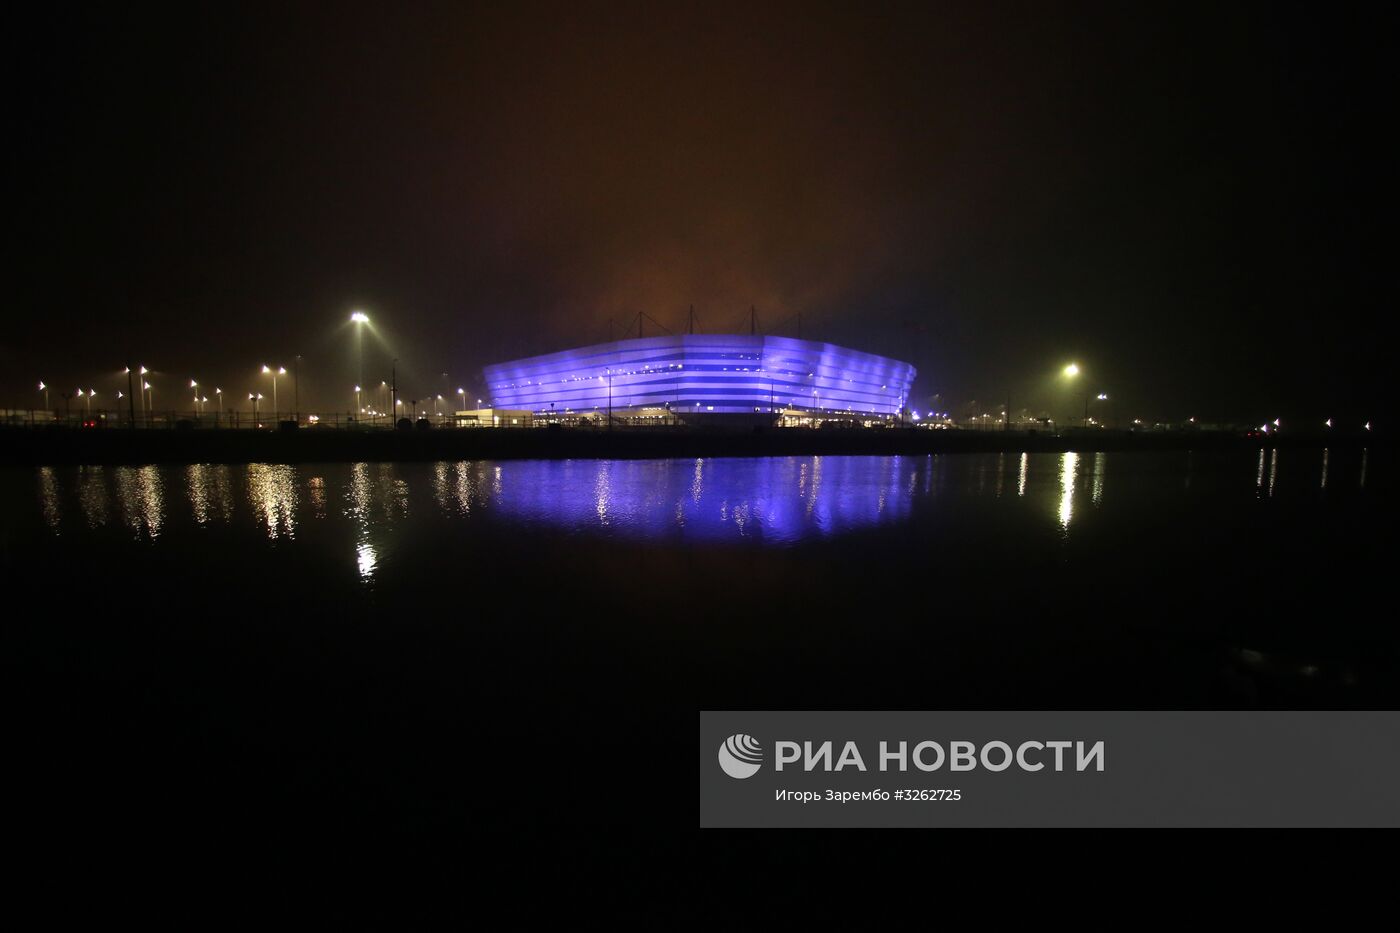 Строительство стадиона "Калининград"